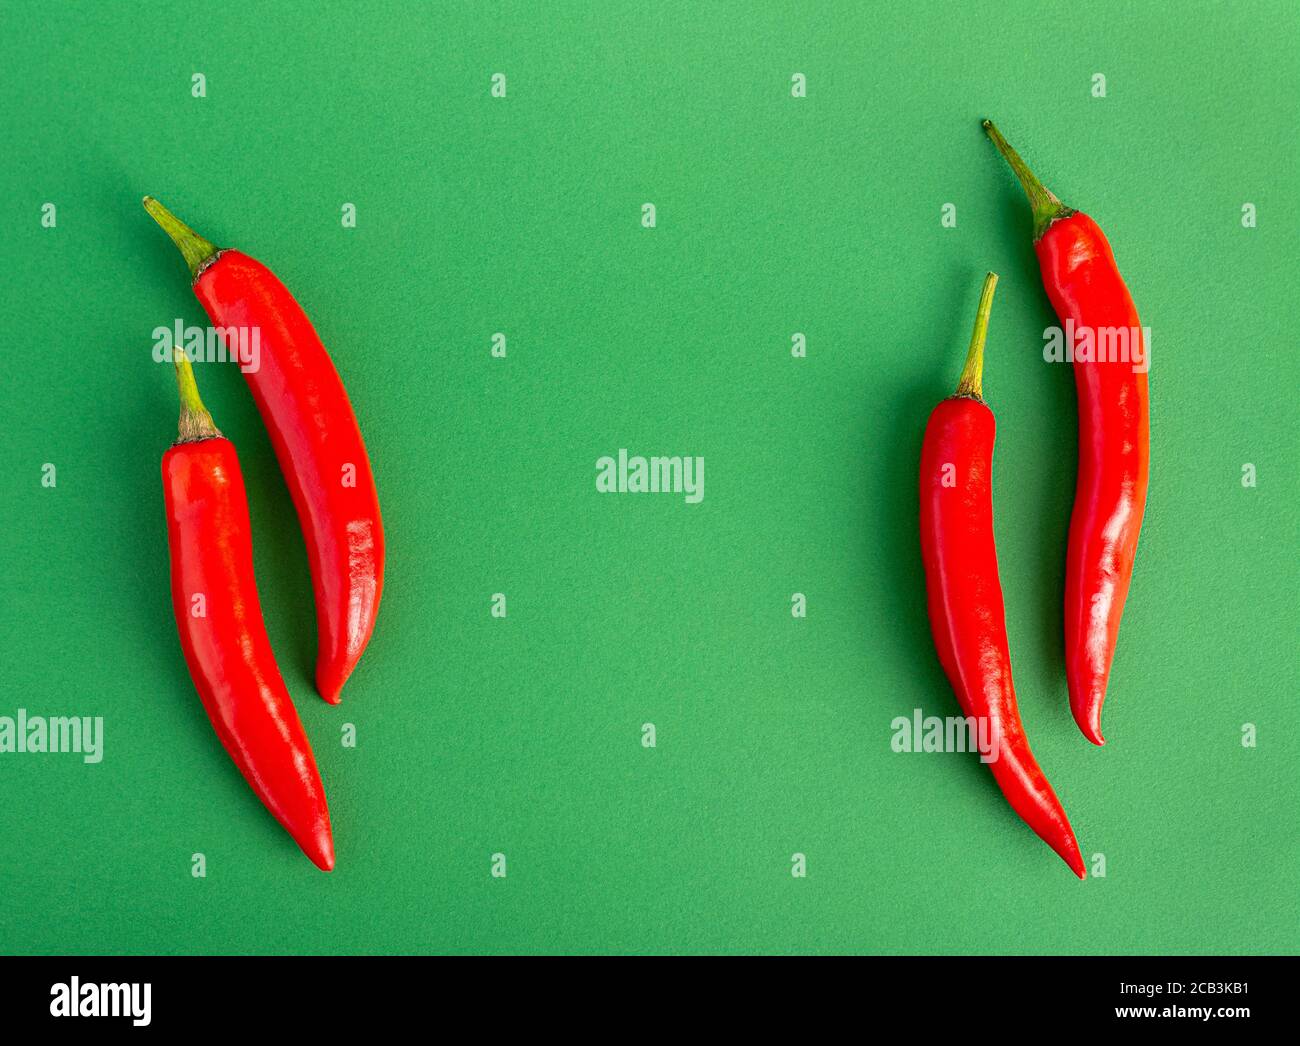 Vier rote Chili-Paprika liegen auf jeder Seite Ein grüner Hintergrund Stockfoto